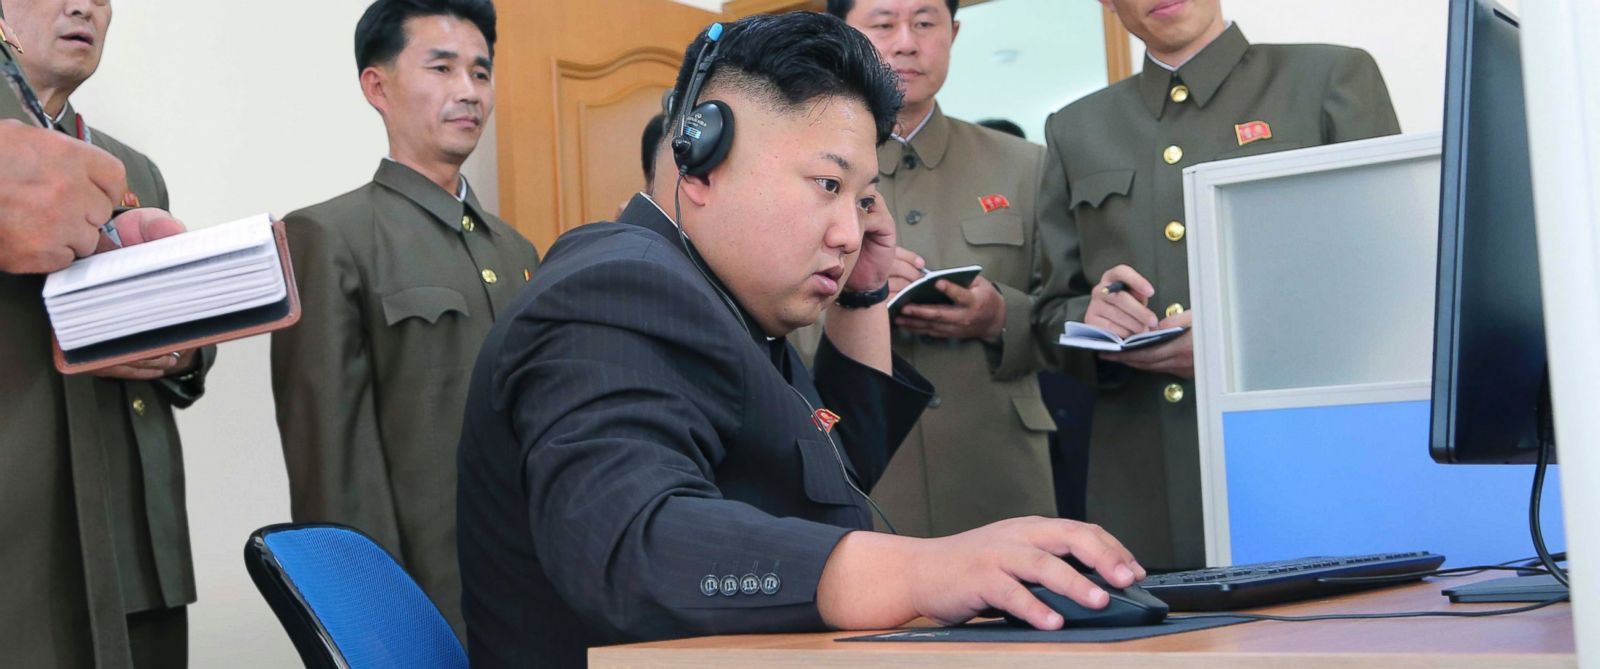 روسيا توفر لكوريا الشمالية وسيلة اتصال جديدة بالإنترنت